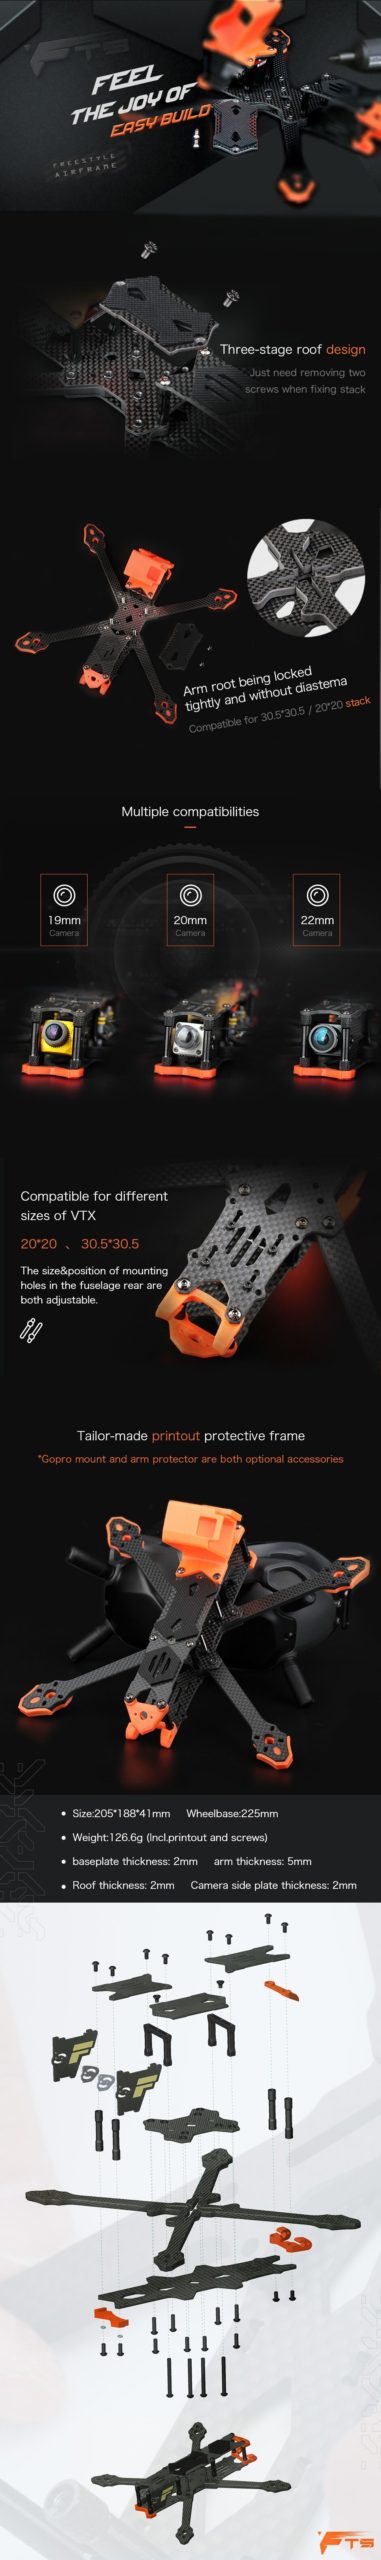 T-Motor FT5 FPV Frame infographic